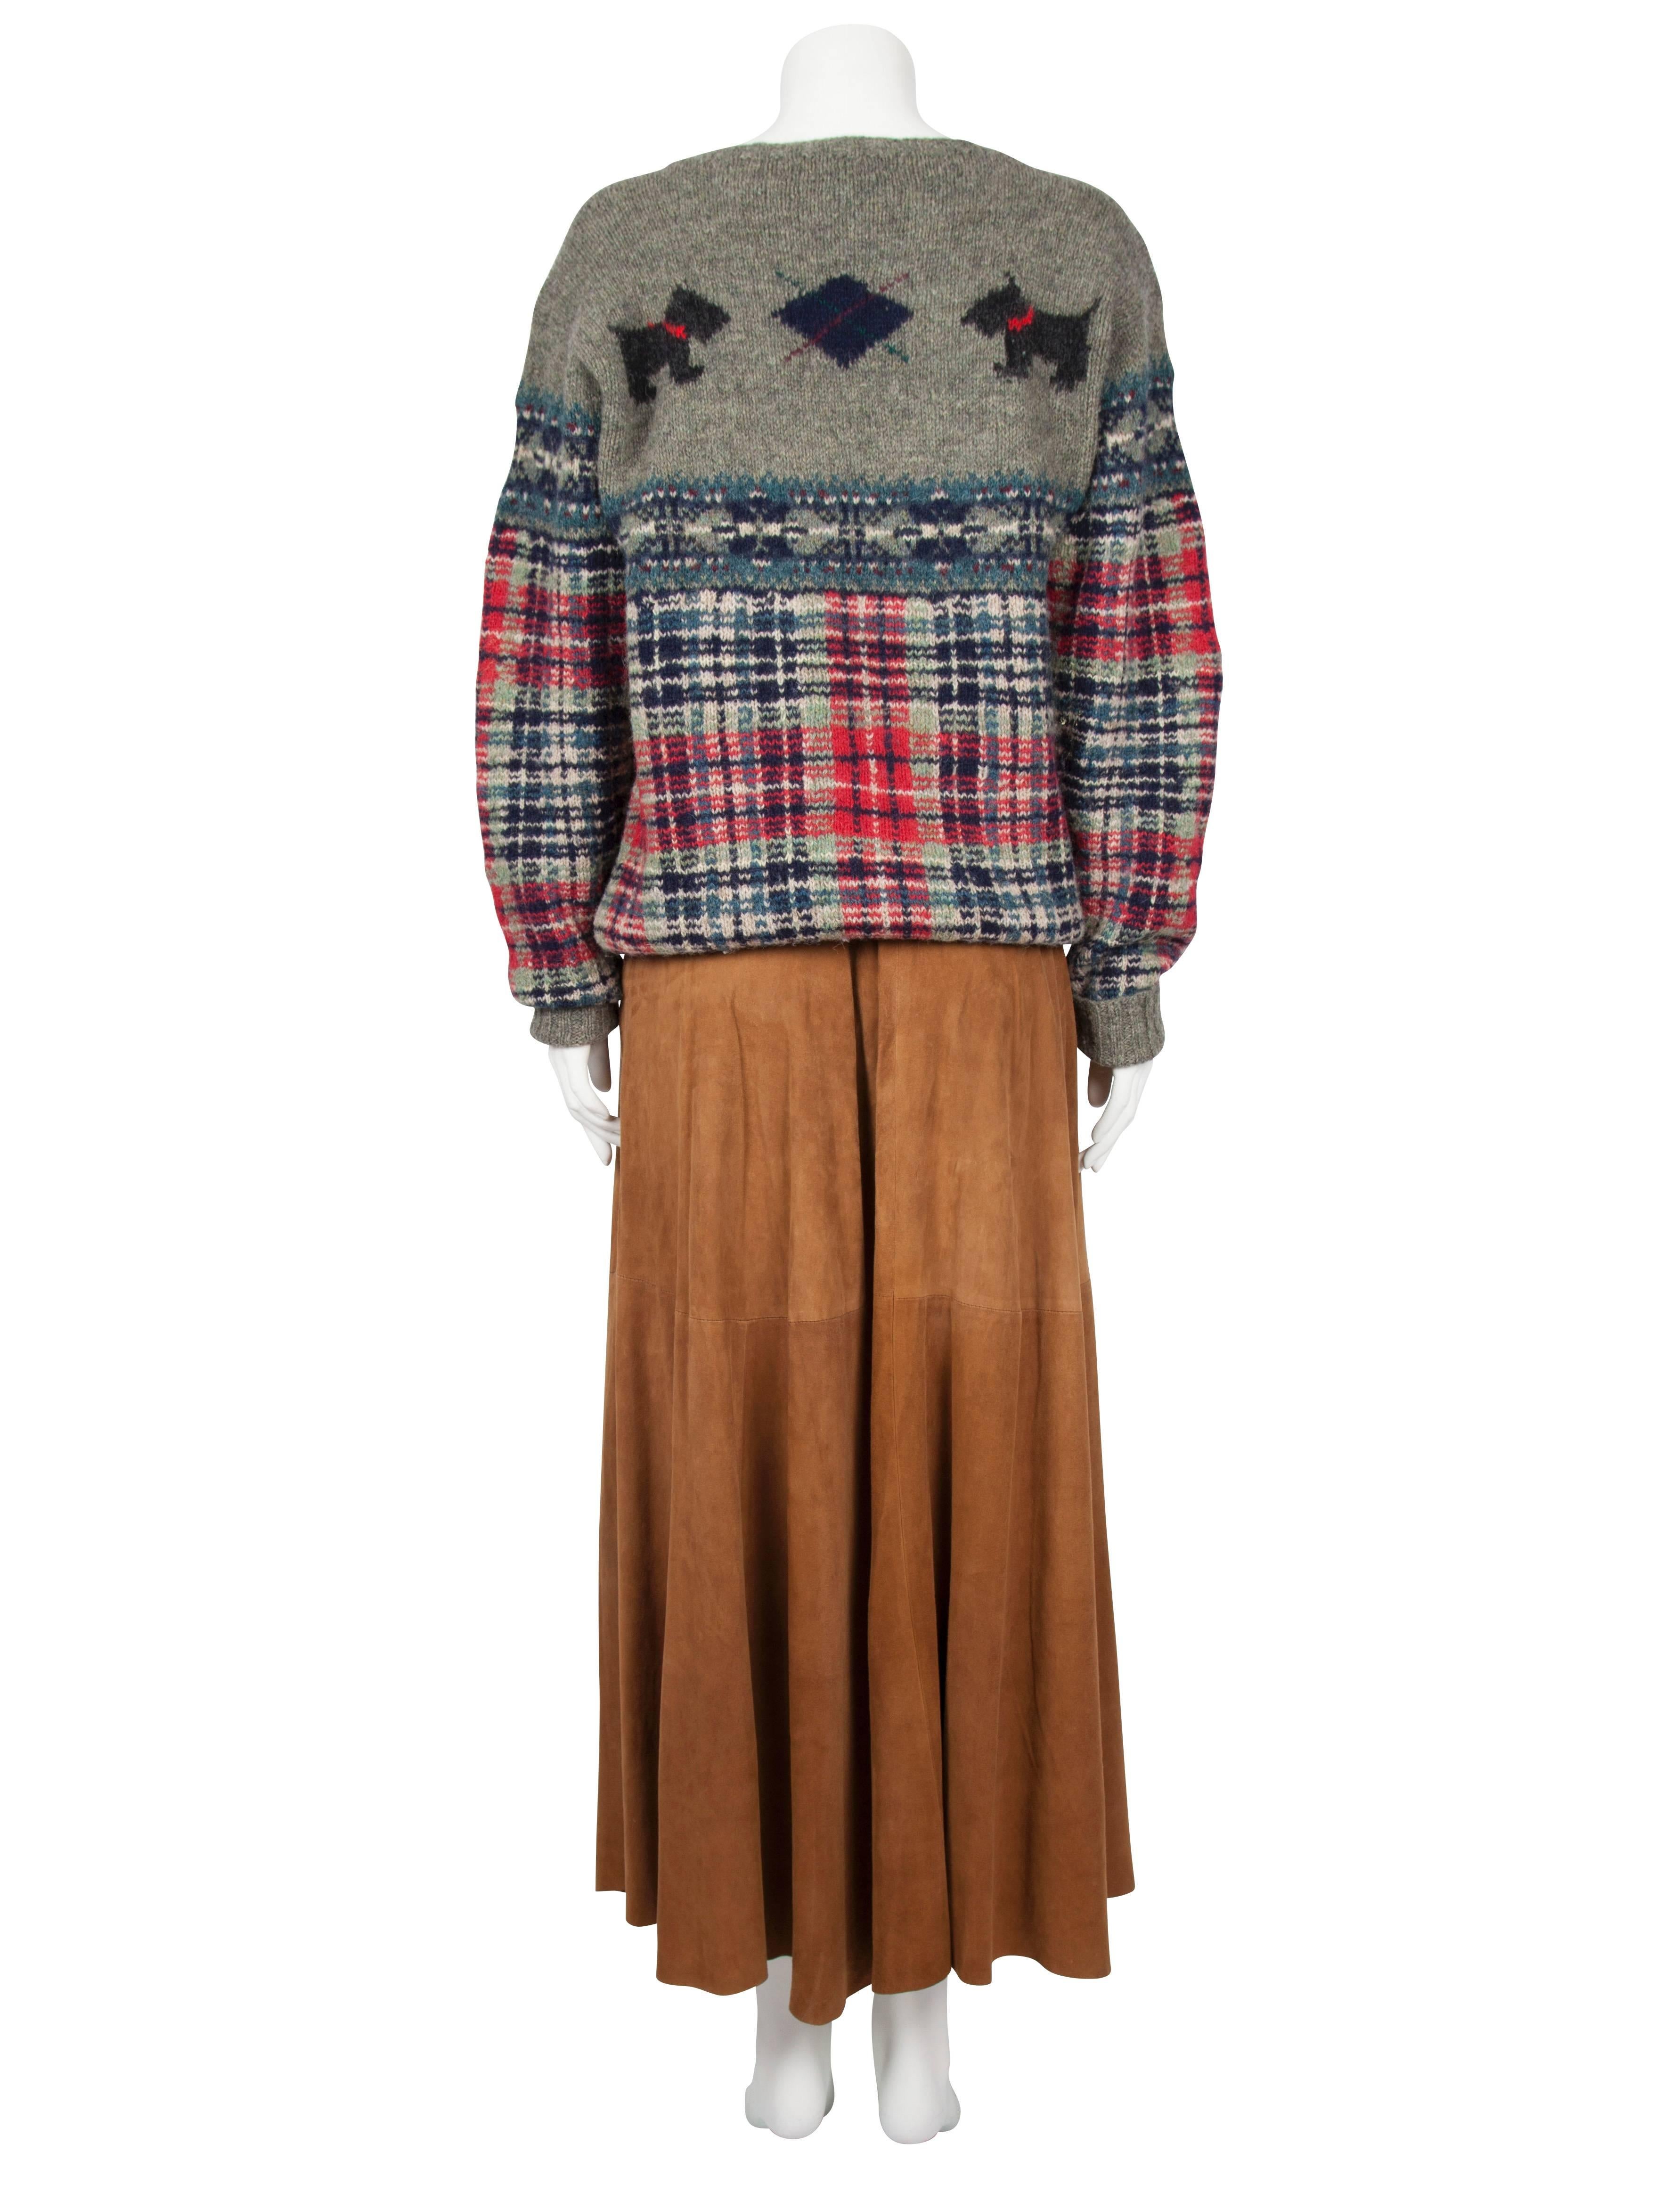 Ralph Lauren Scottie Motif Sweater In Excellent Condition For Sale In London, GB